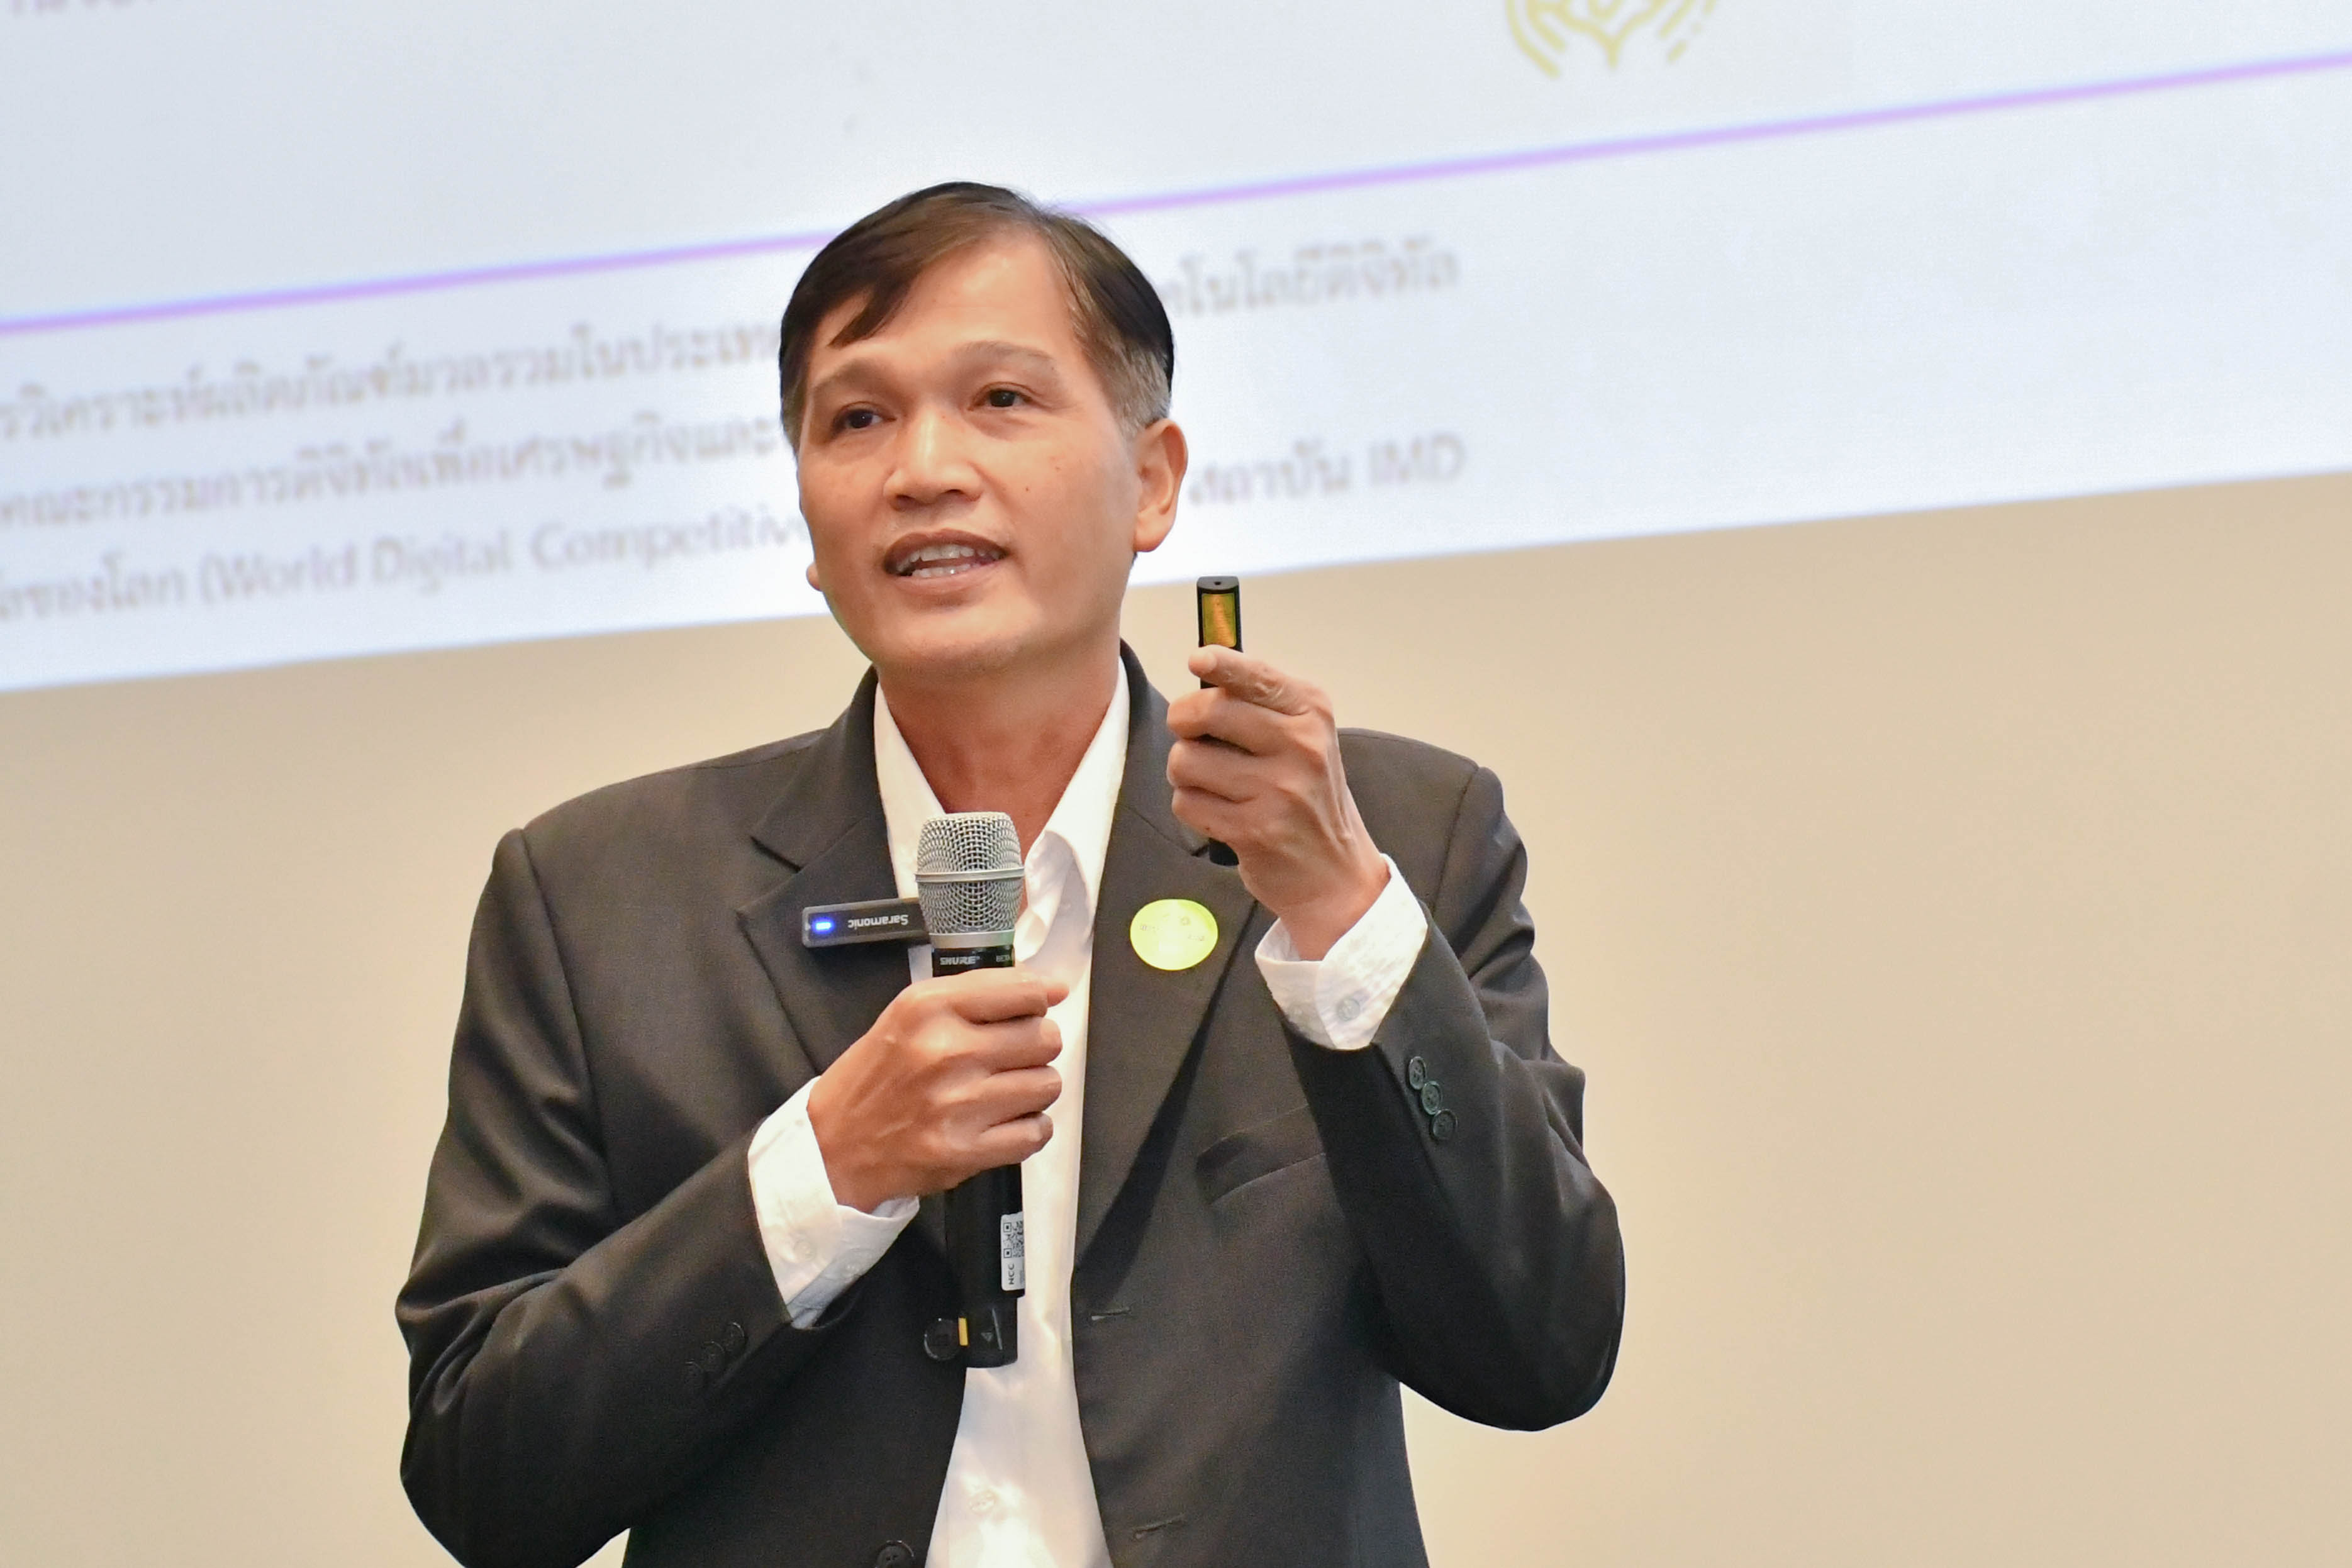 รดช. เป็นวิทยากรบรรยายในงานสัมมนาเรื่อง "5G เพื่อการพัฒนาอุตสาหกรรมอัจฉริยะสำหรับประเทศไทย"